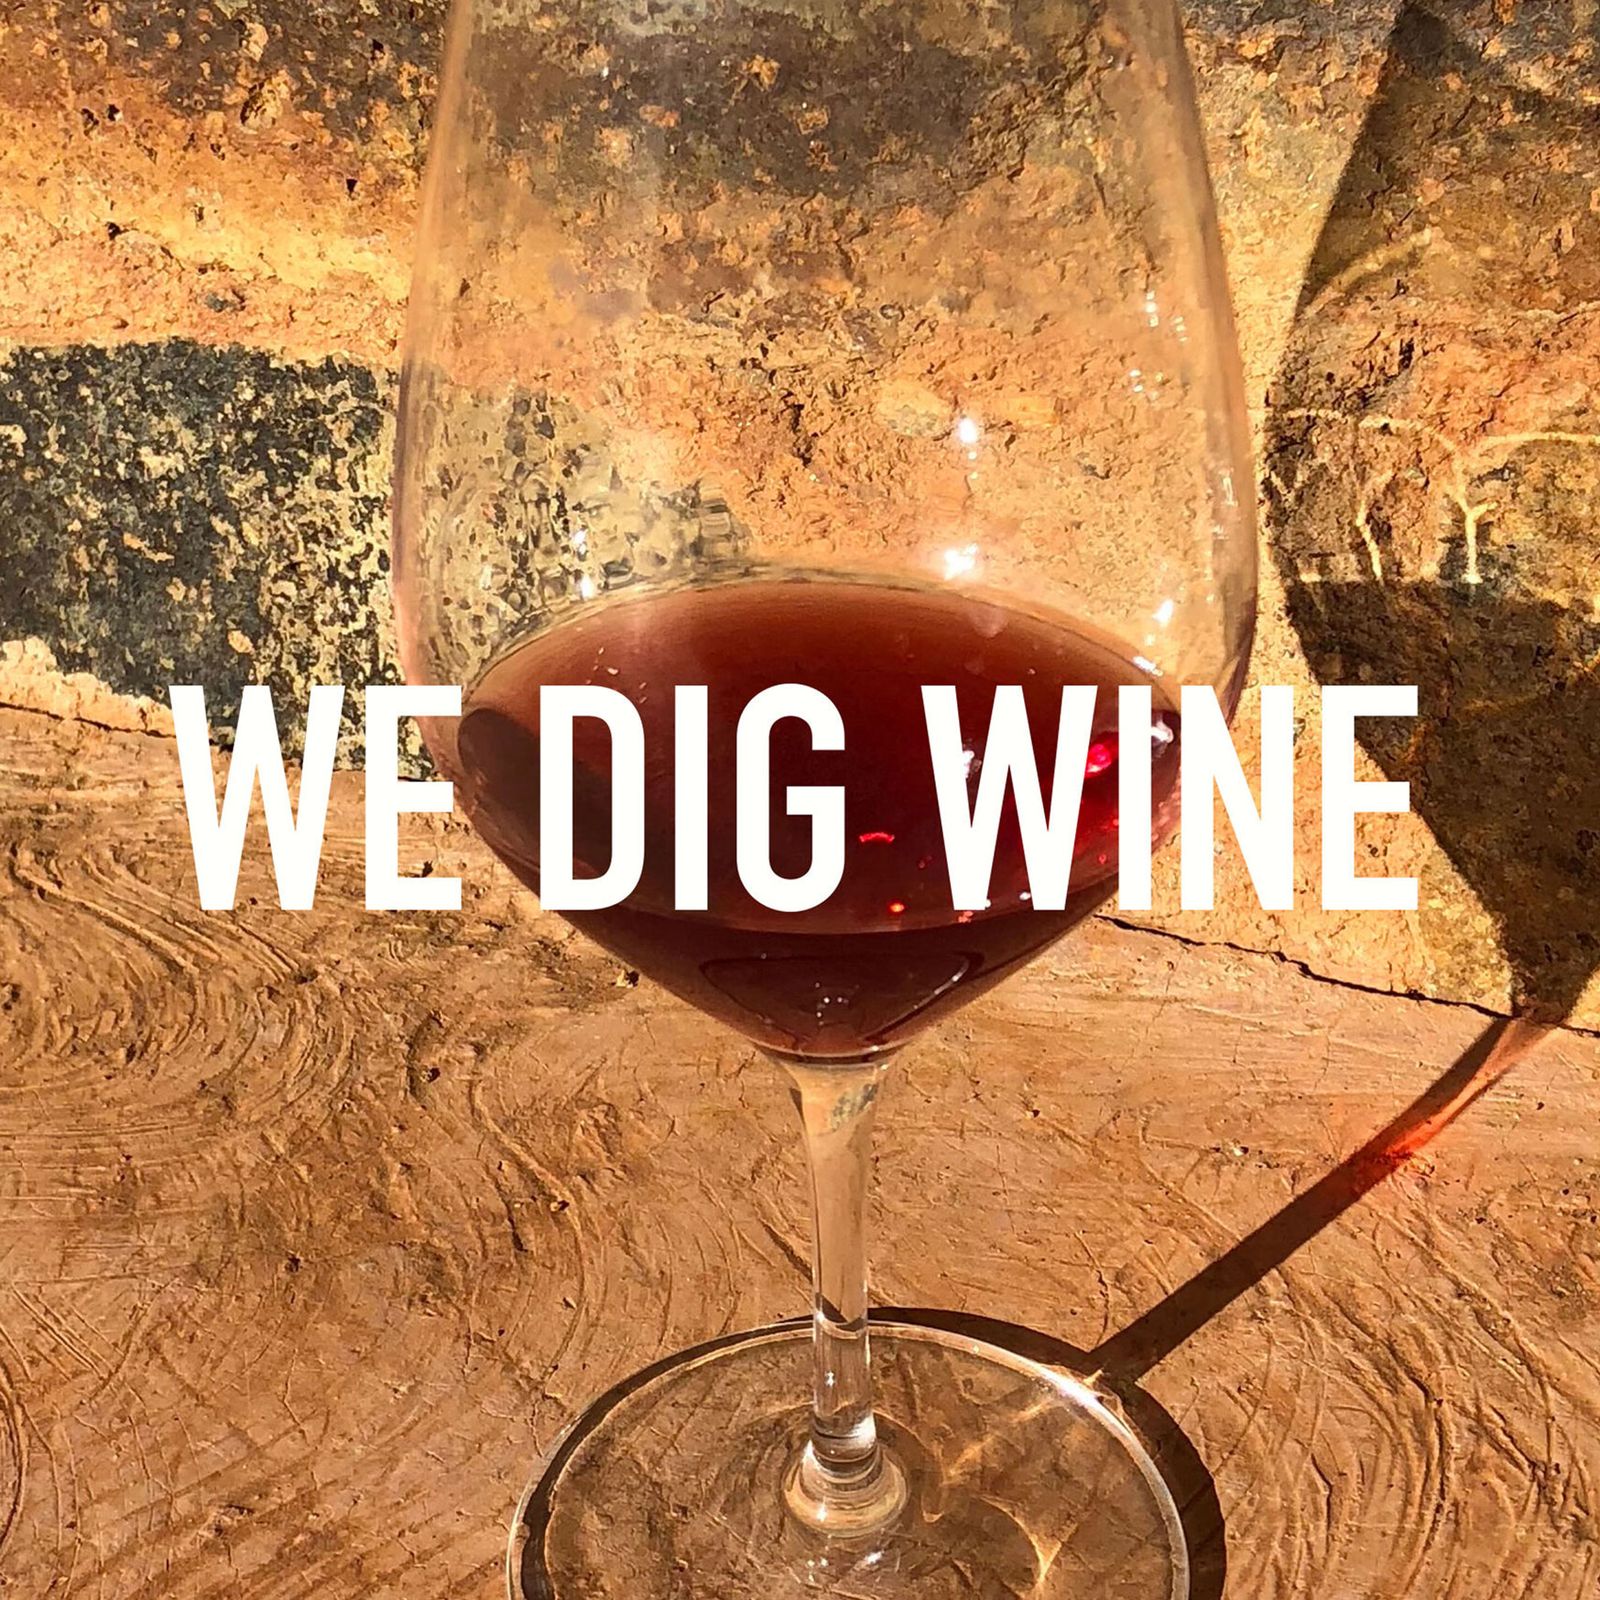 We dig wine